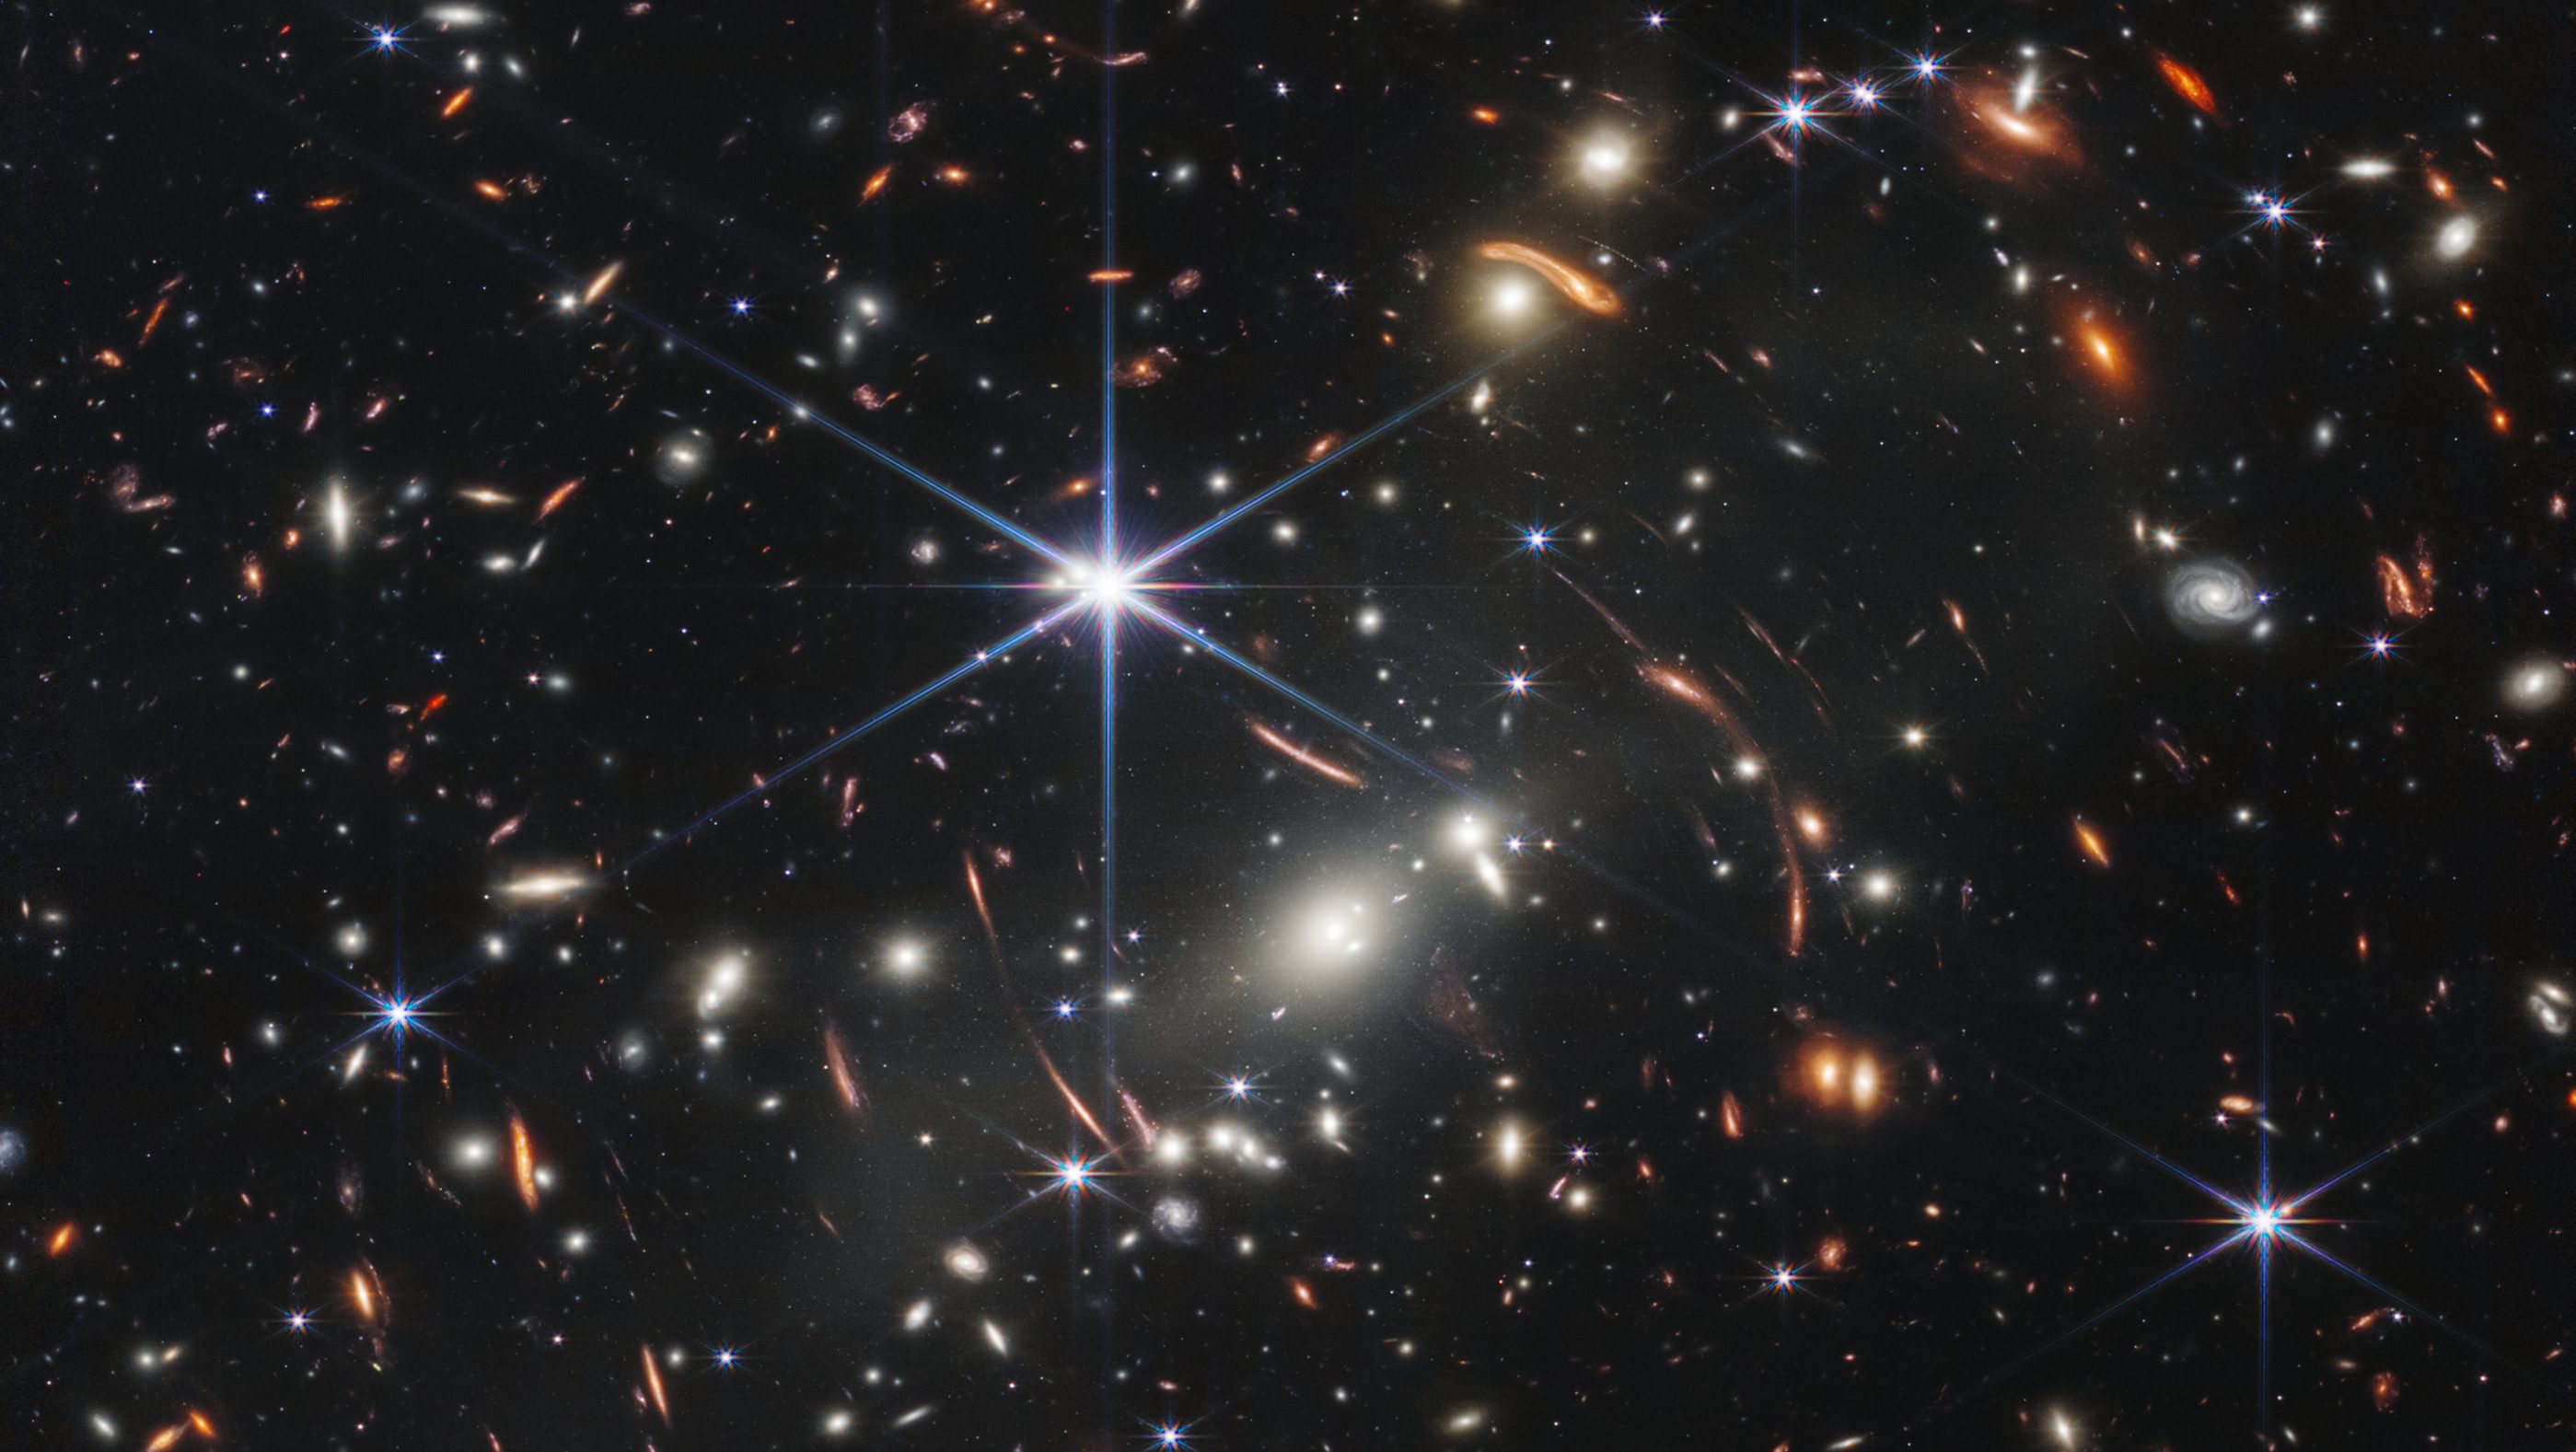 Kozmikus csillagszórót fotózott a James Webb űrtávcső